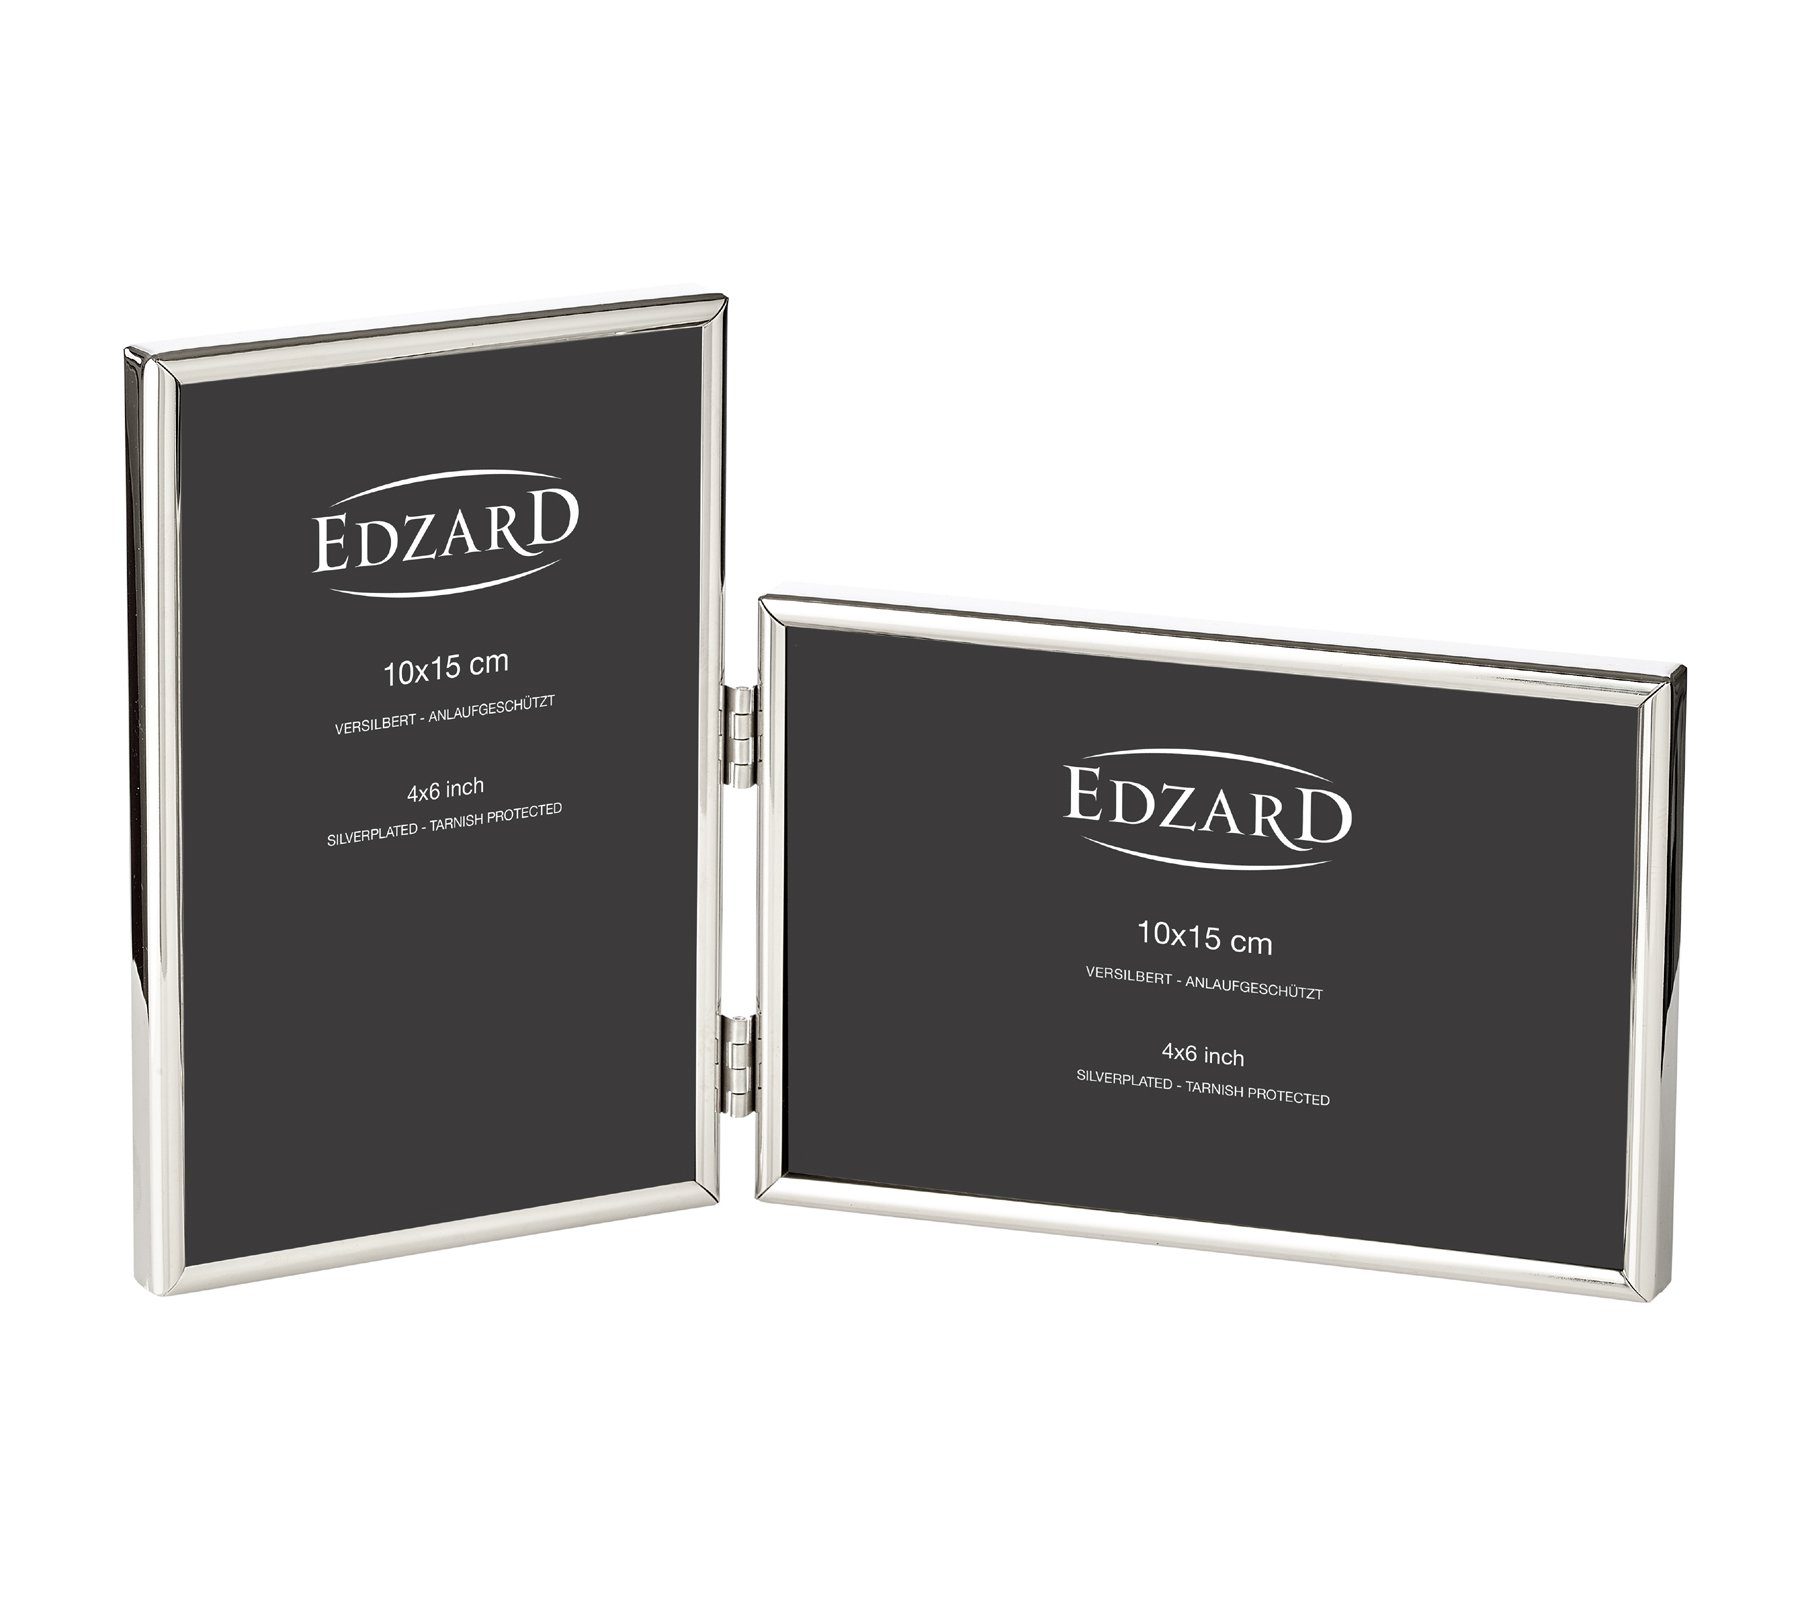 EDZARD Bilderrahmen Otto, versilbert und anlaufgeschützt, für zwei 10x15 cm  Fotos - Doppel-Fotorahmen, Rahmen für 2 Bilder - zum Hinstellen und  Aufhängen